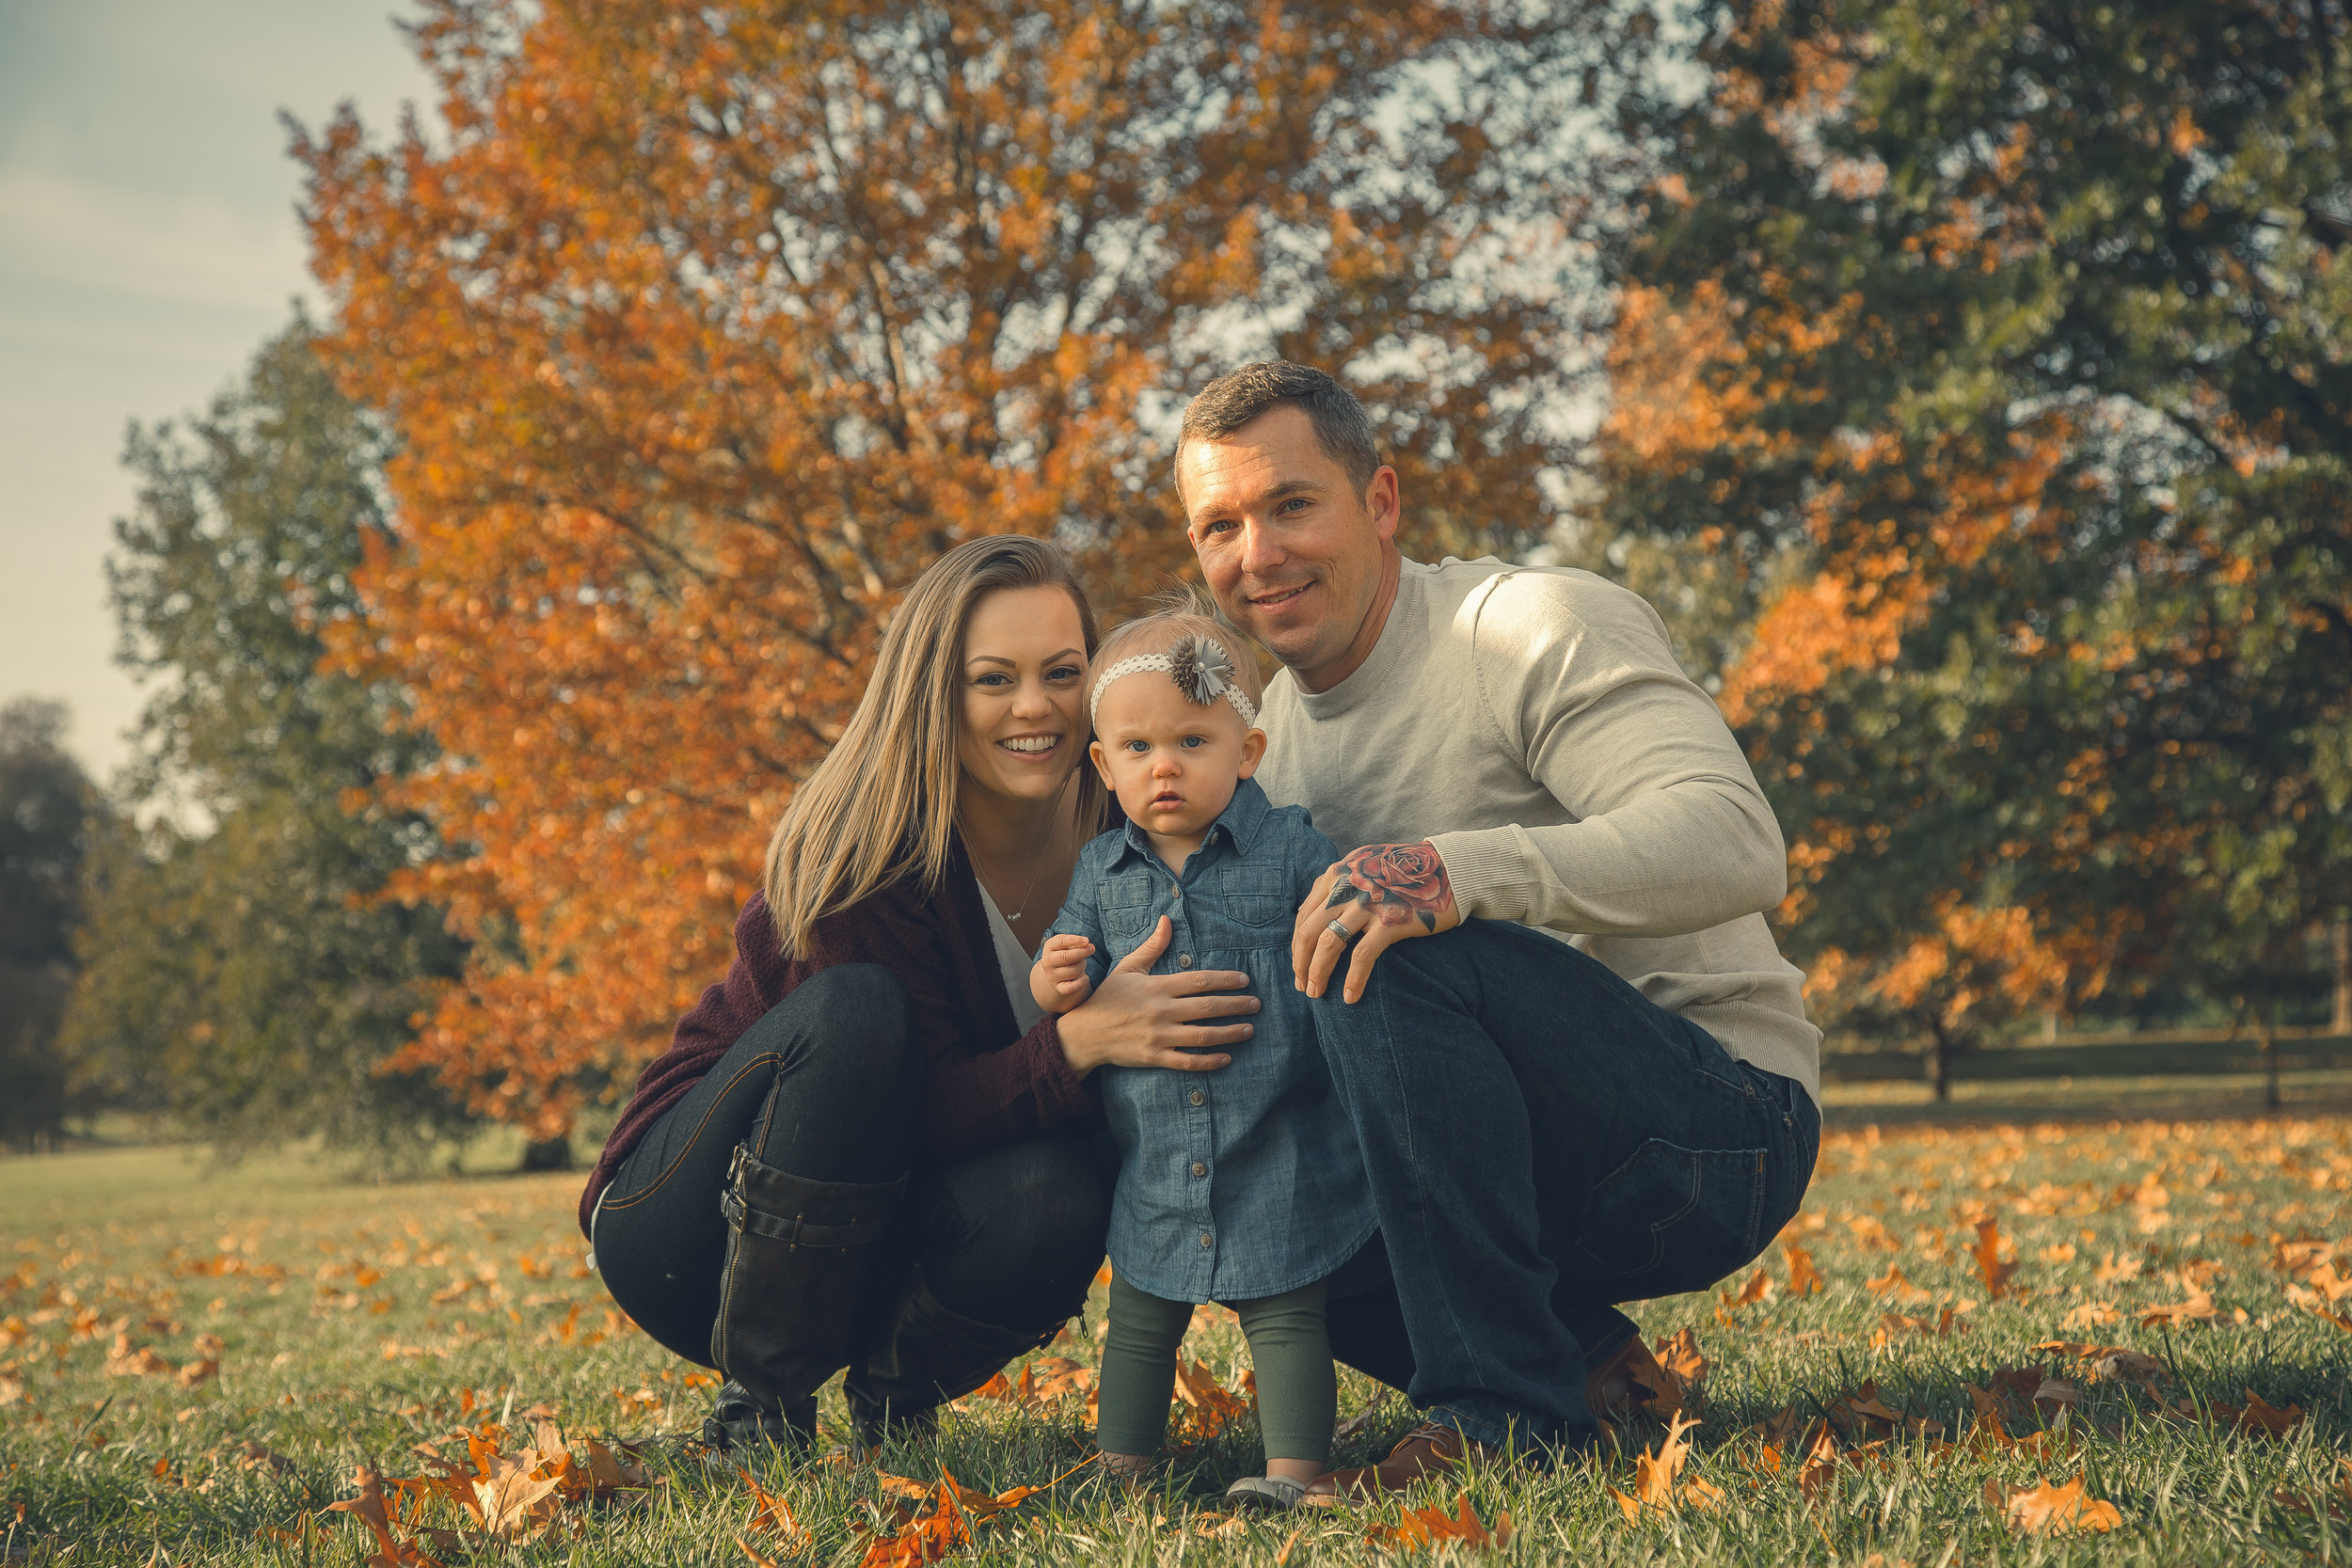 Bennett-Burrell Family Photos 2018 (22 of 39).jpg